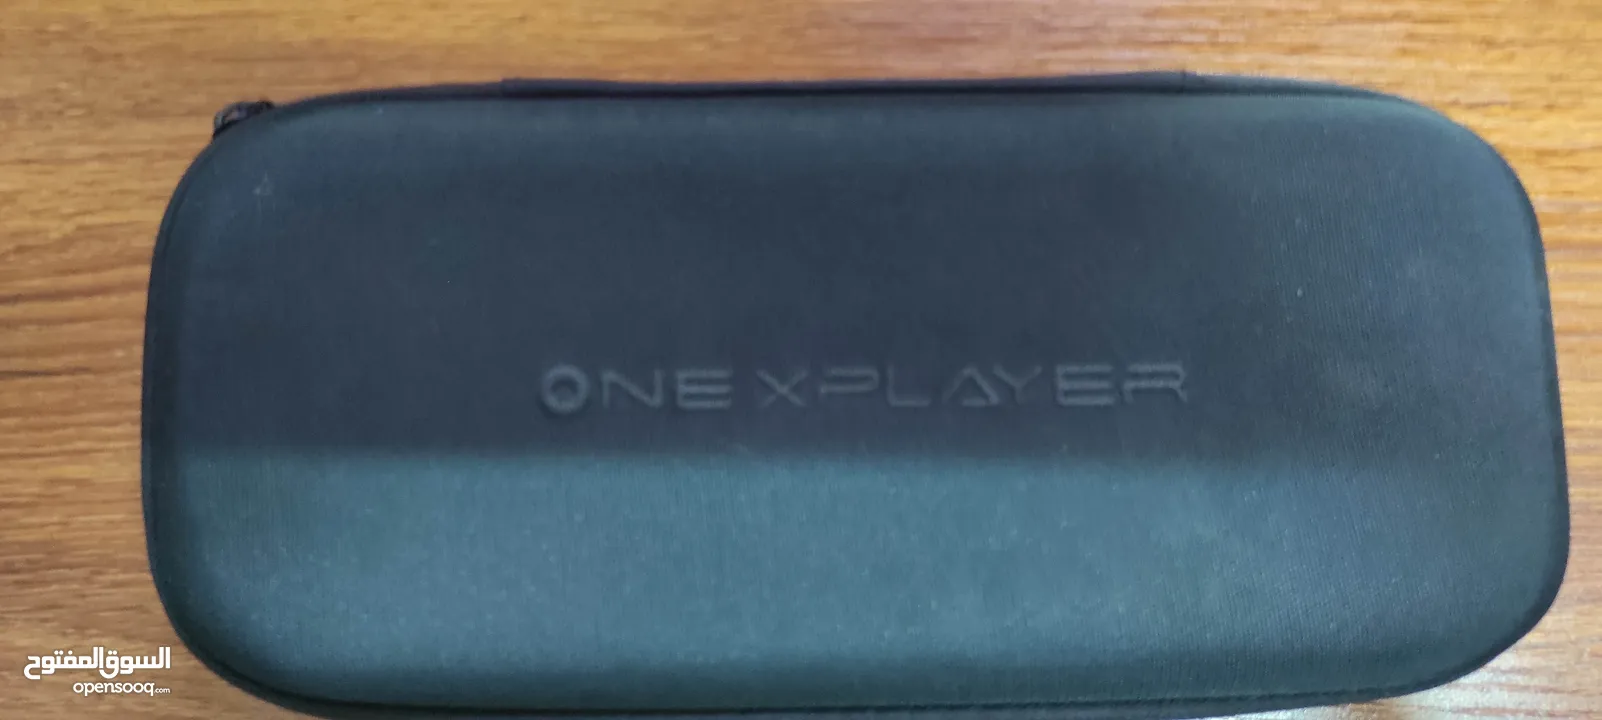 جهاز onexplayer mini pro